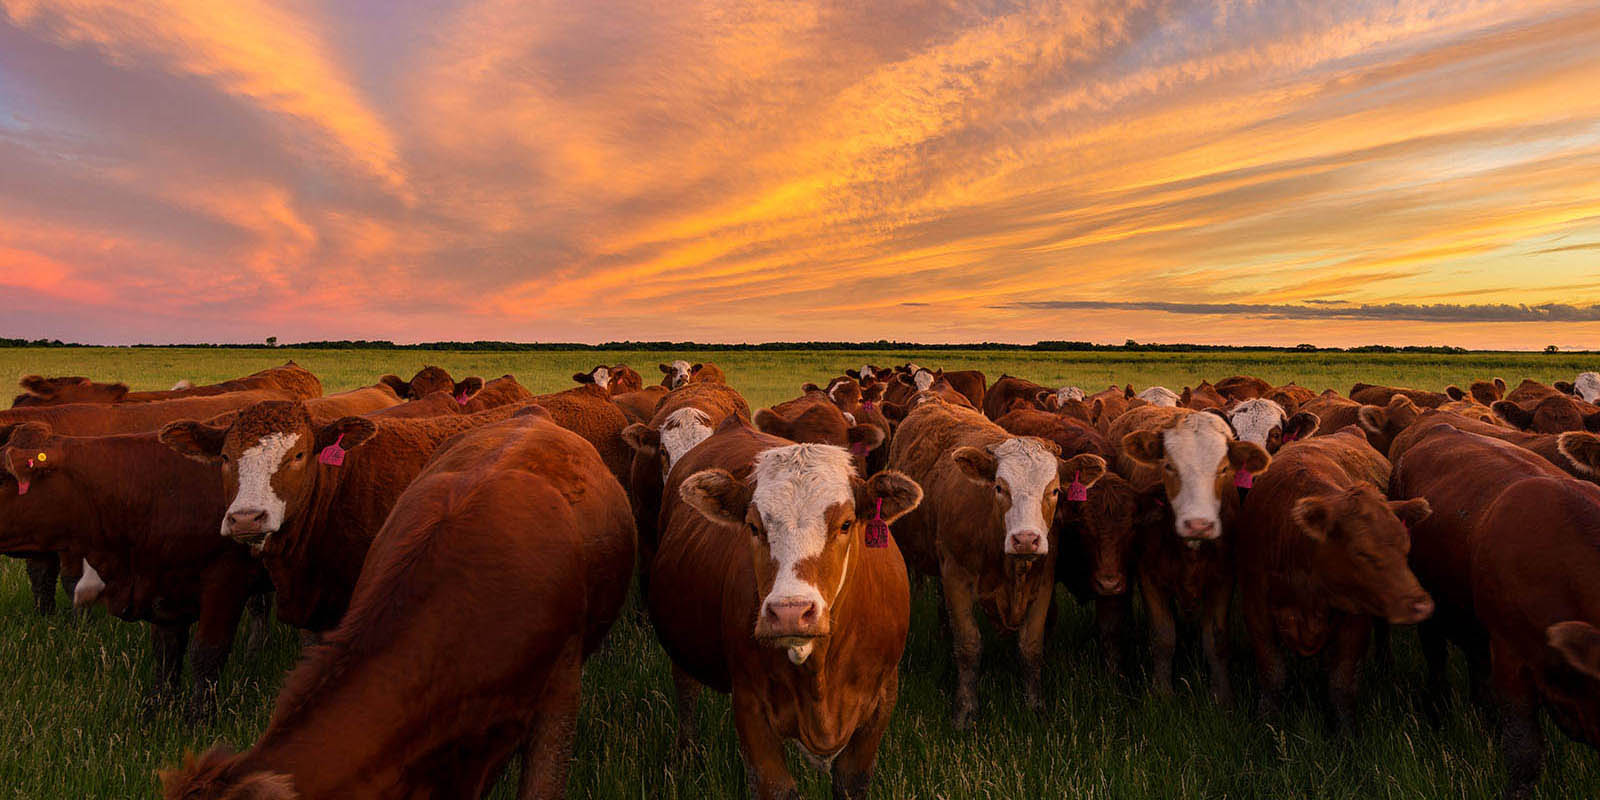 Cattle grazing in a farm field